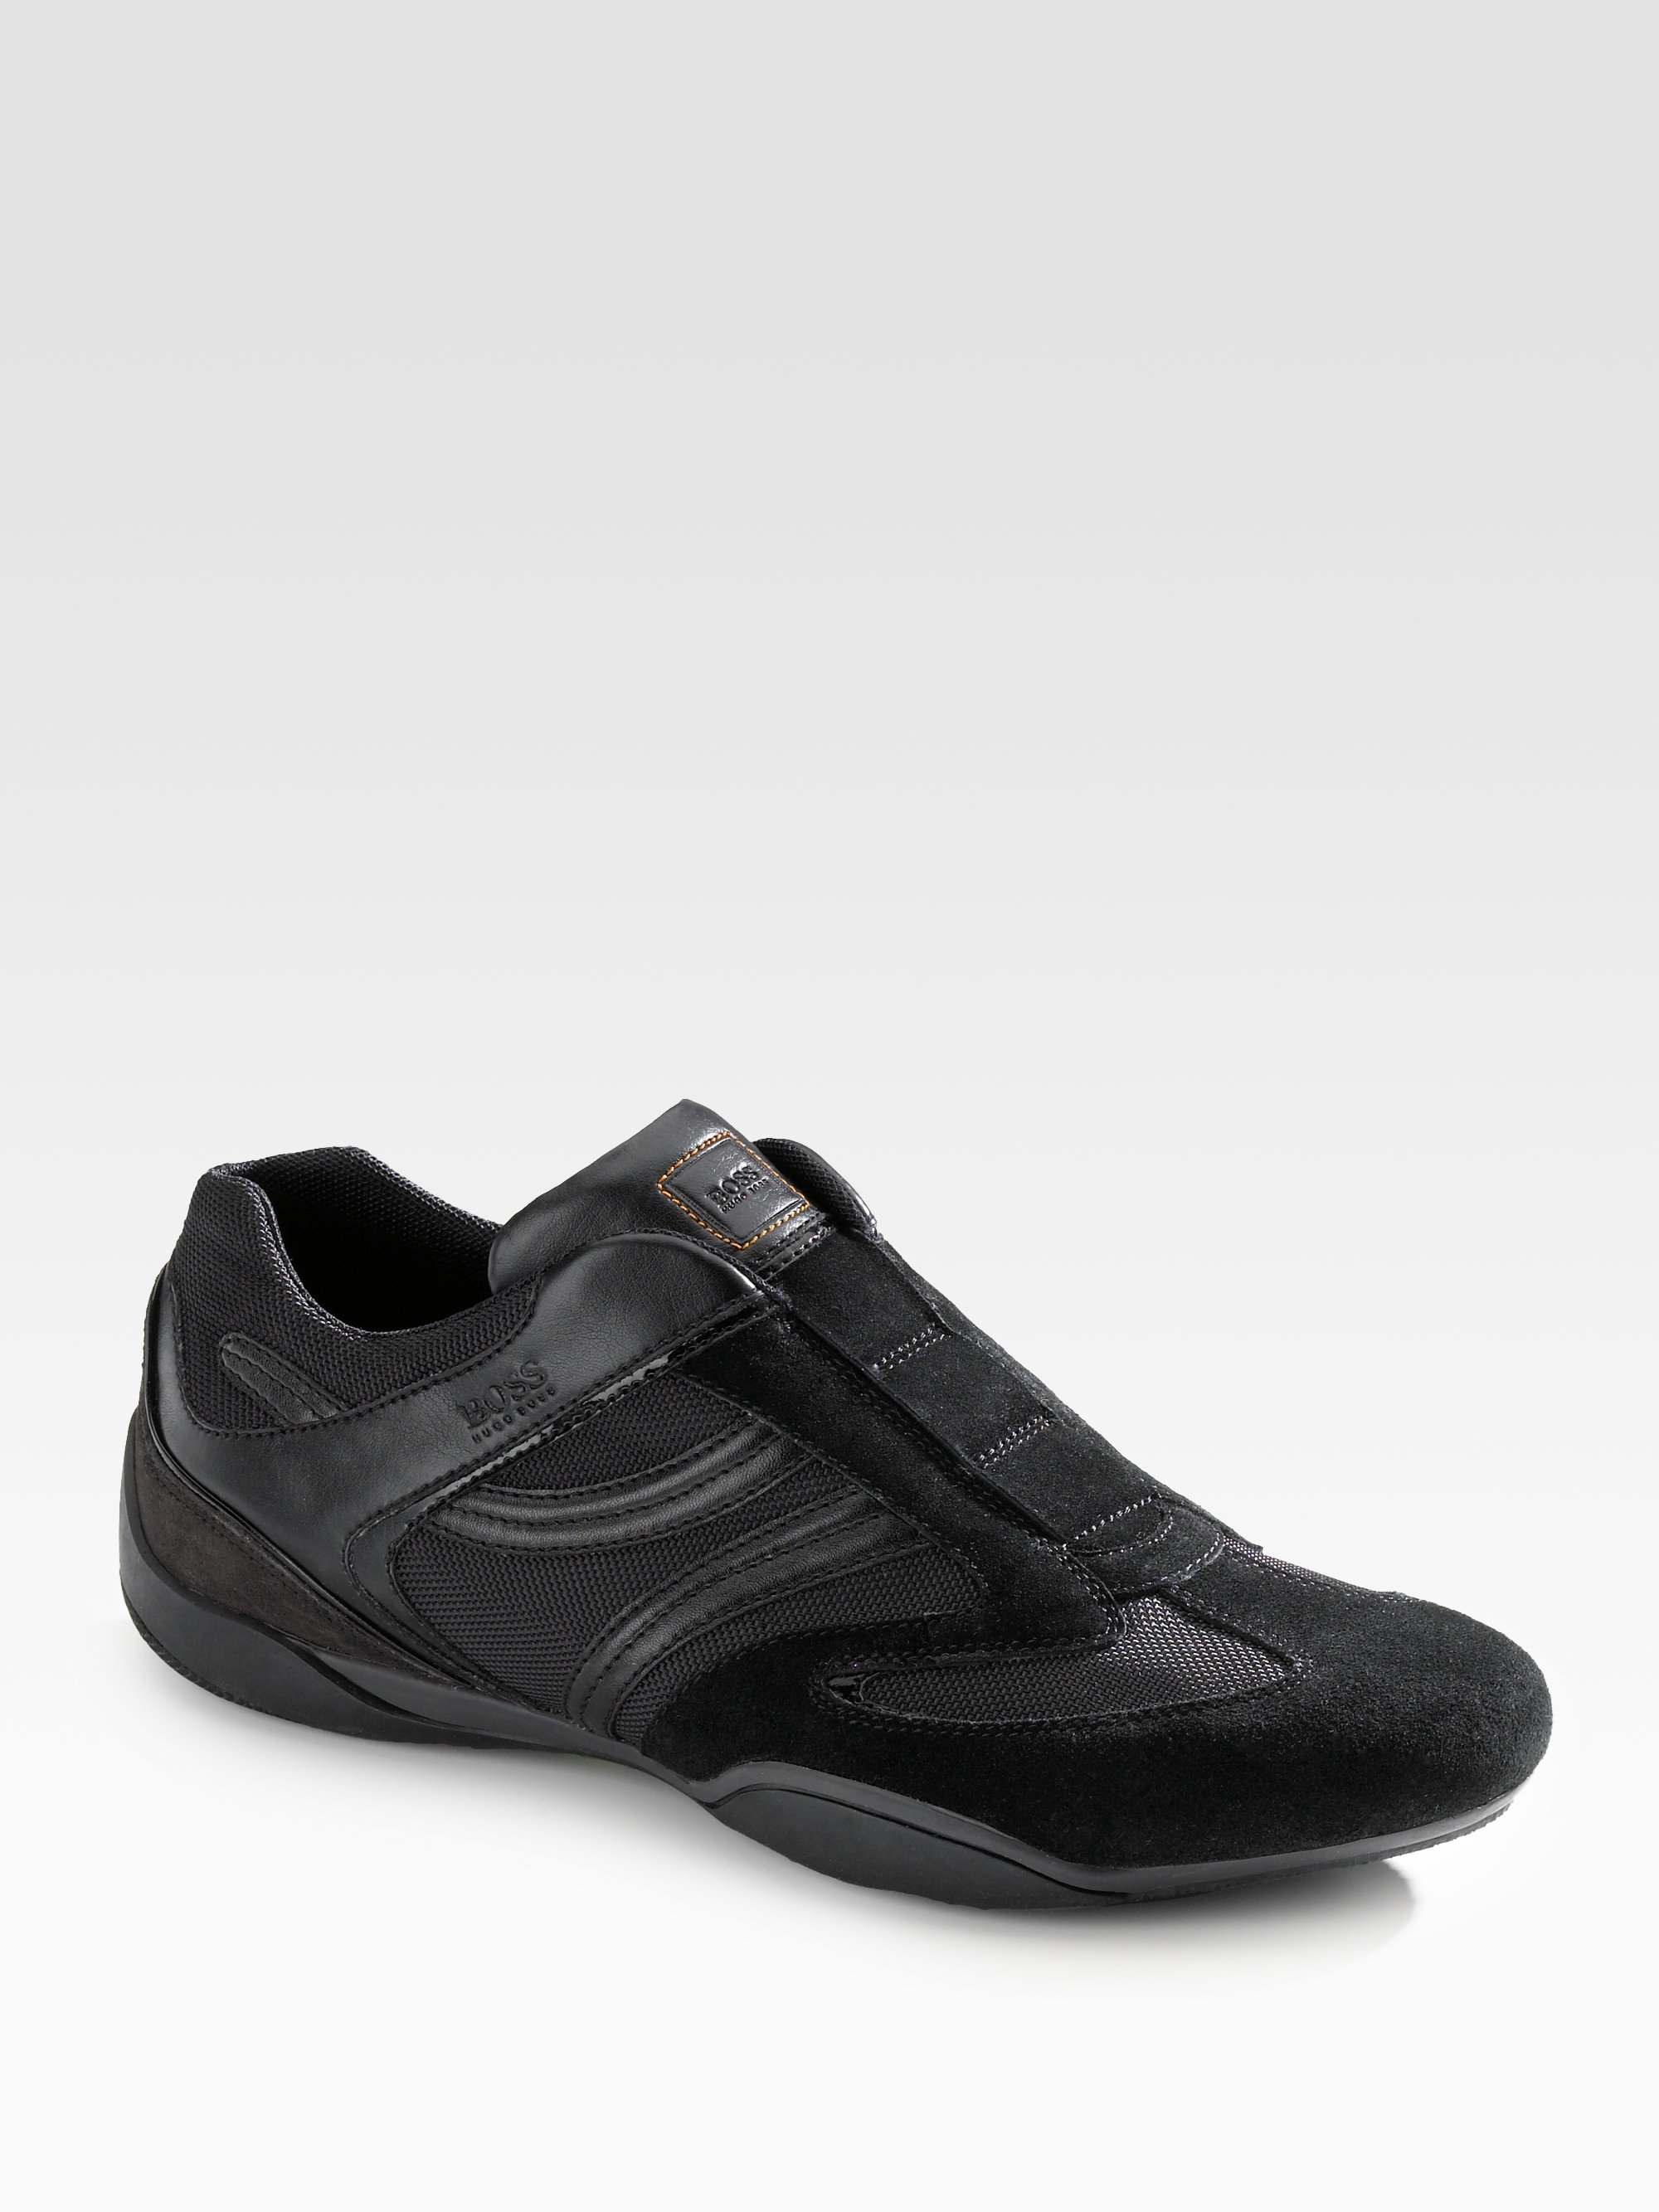 BOSS Orange Slip-on Sneakers in Black for Men - Lyst